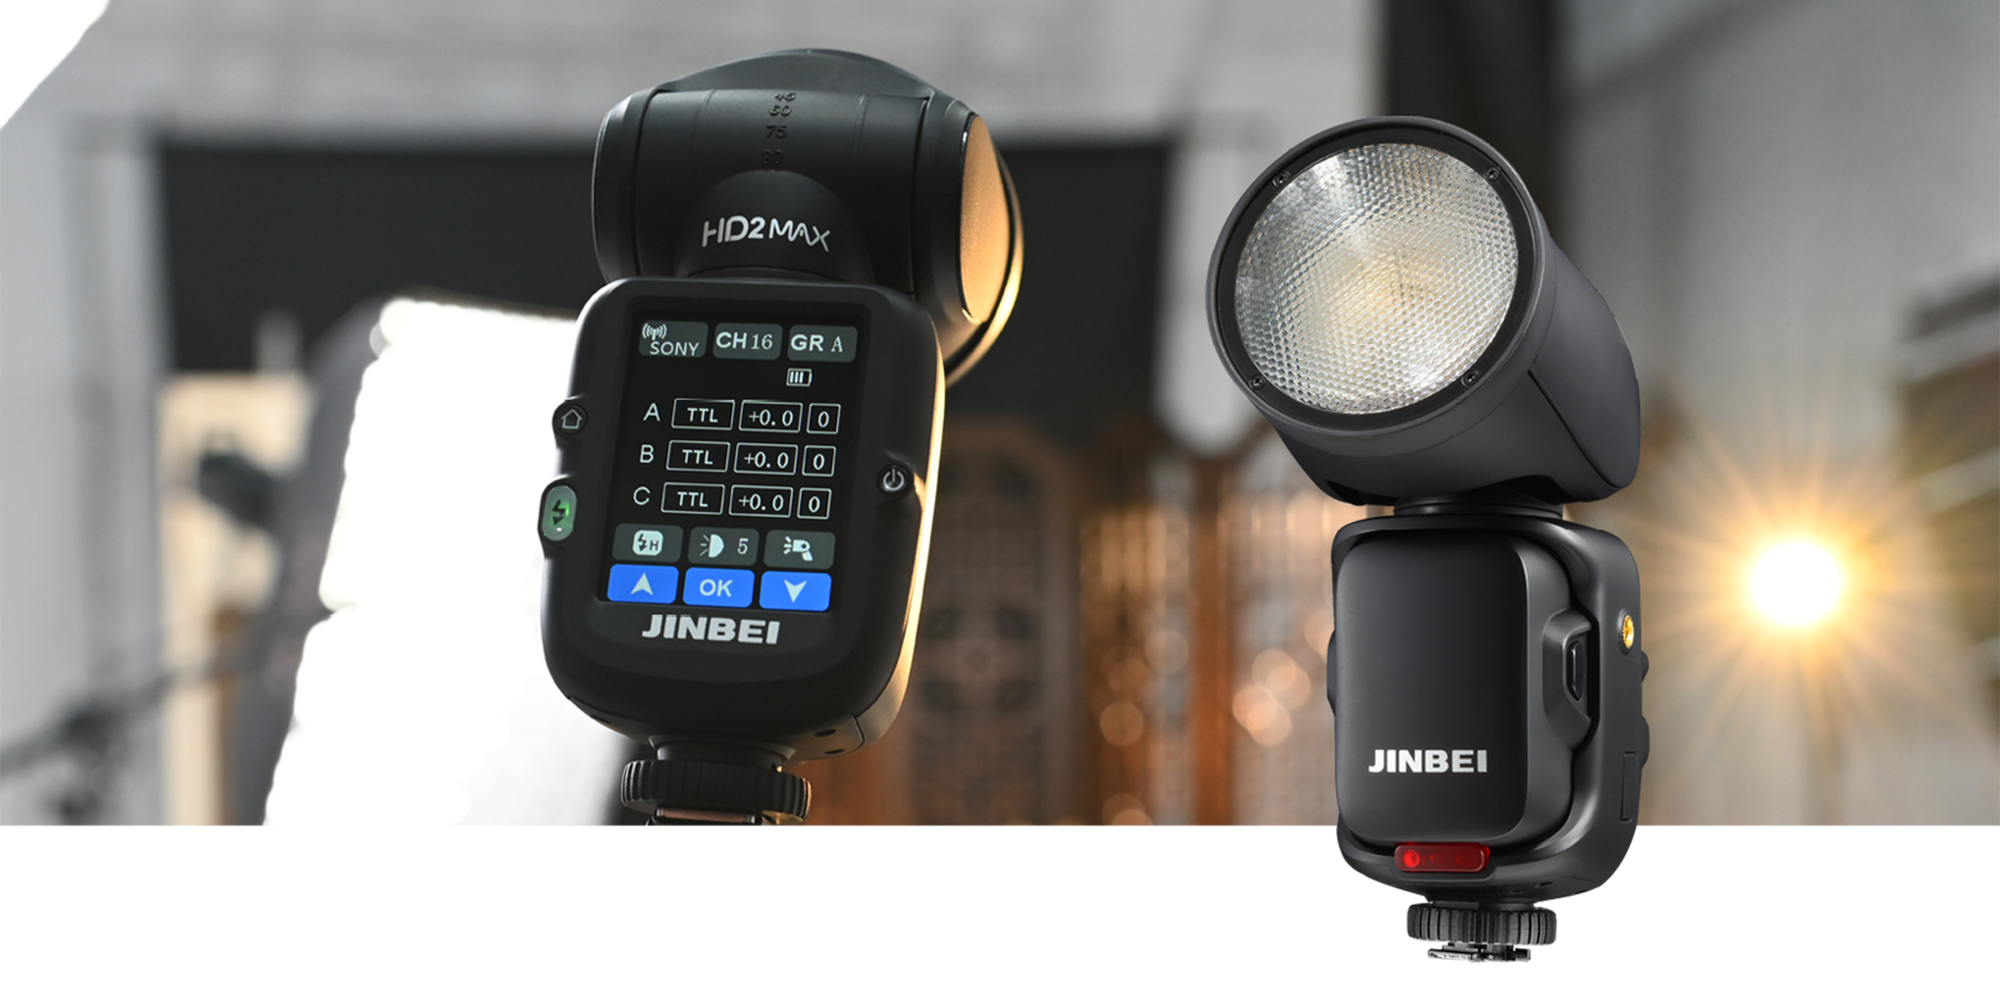 Jinbei präsentiert den Aufsteckblitz HD-2 Max für Sony-Kameras